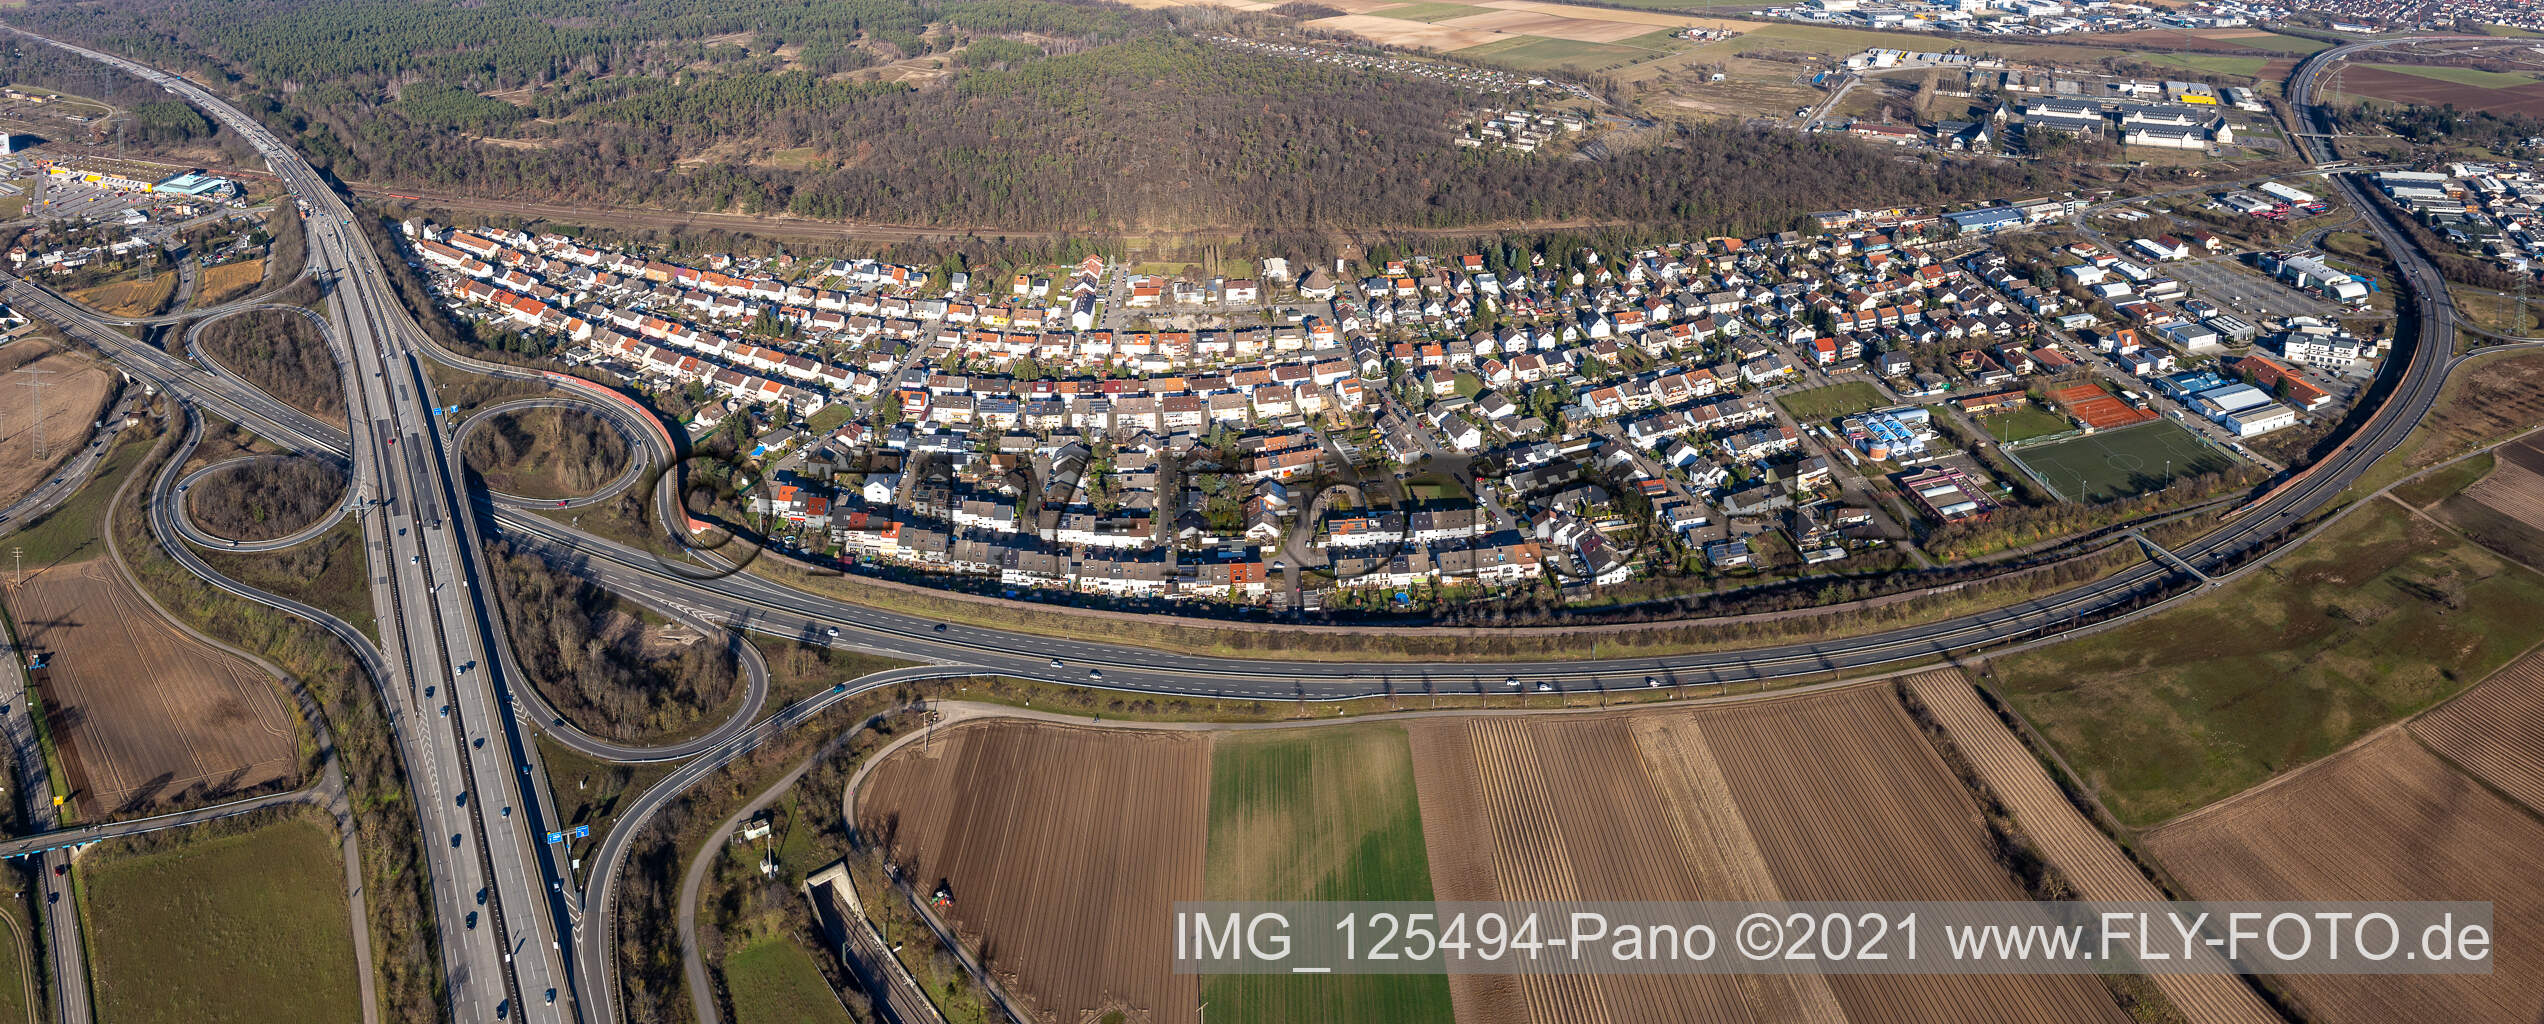 Vue aérienne de Zone d'habitation et infrastructures dans le district de Hirschacker à Schwetzingen dans le département Bade-Wurtemberg, Allemagne